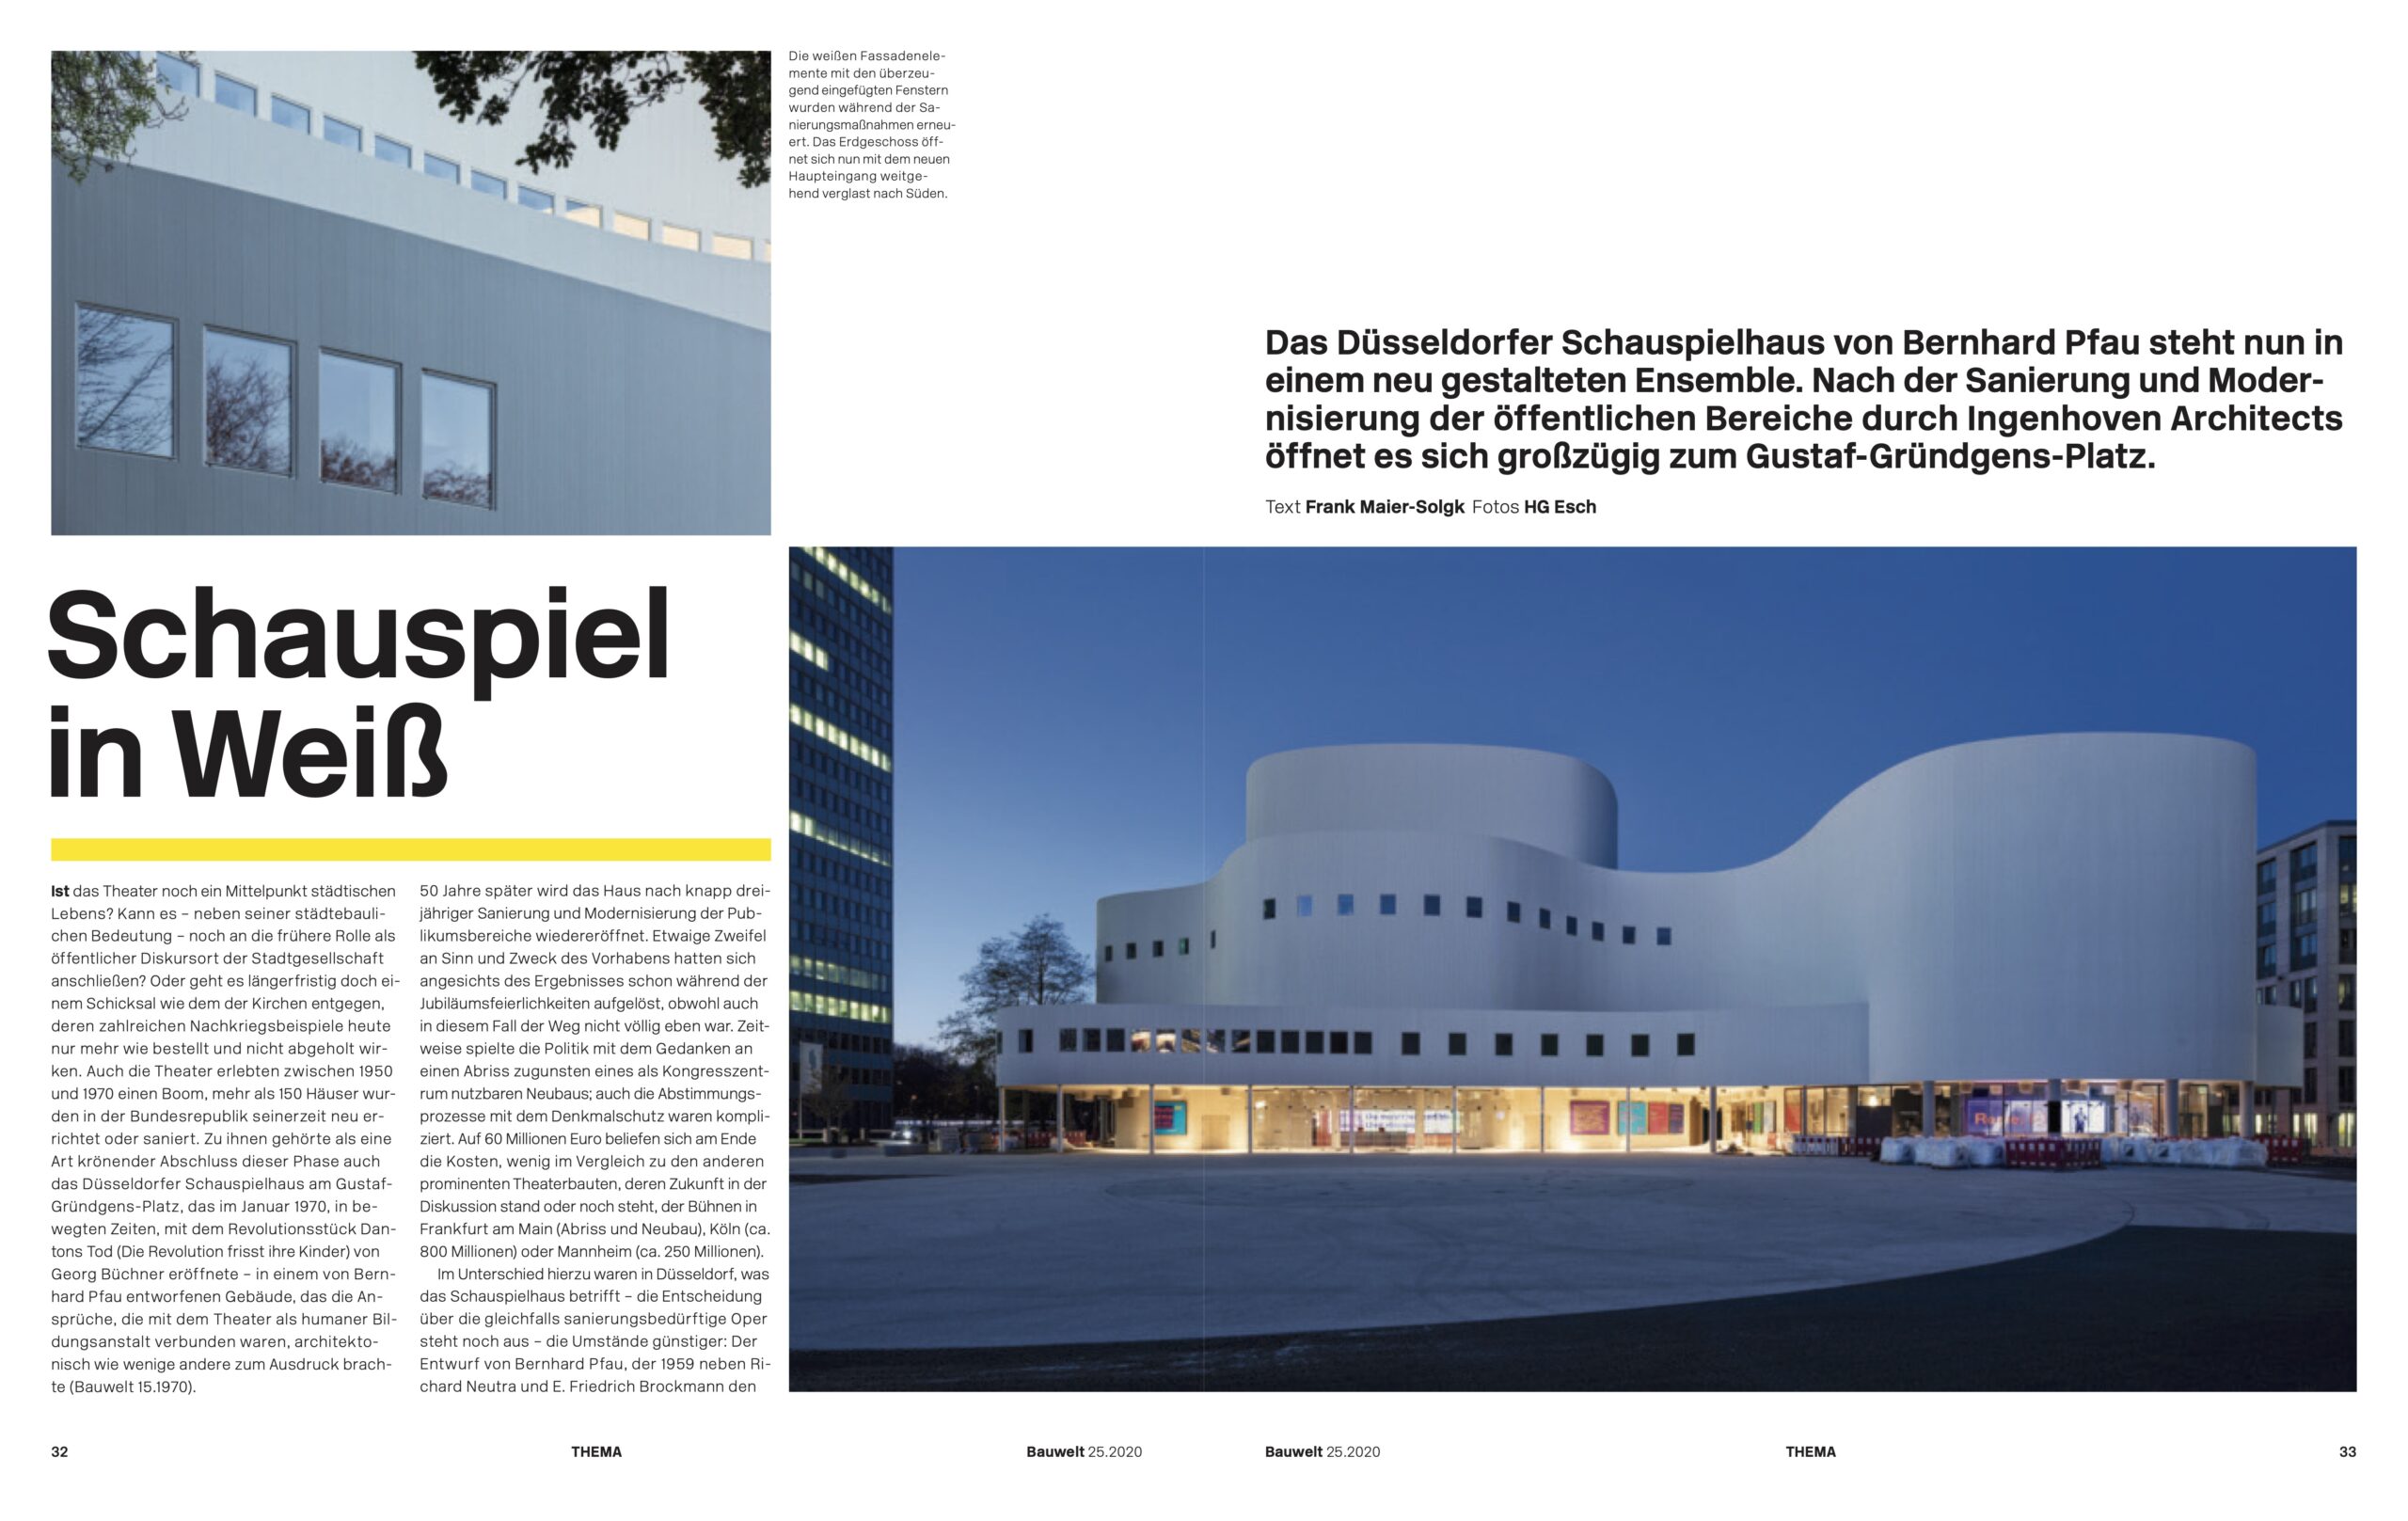 Schauspielhaus Düsseldorf von Ingenhoven Architects Bauwelt Düsseldorf 2020